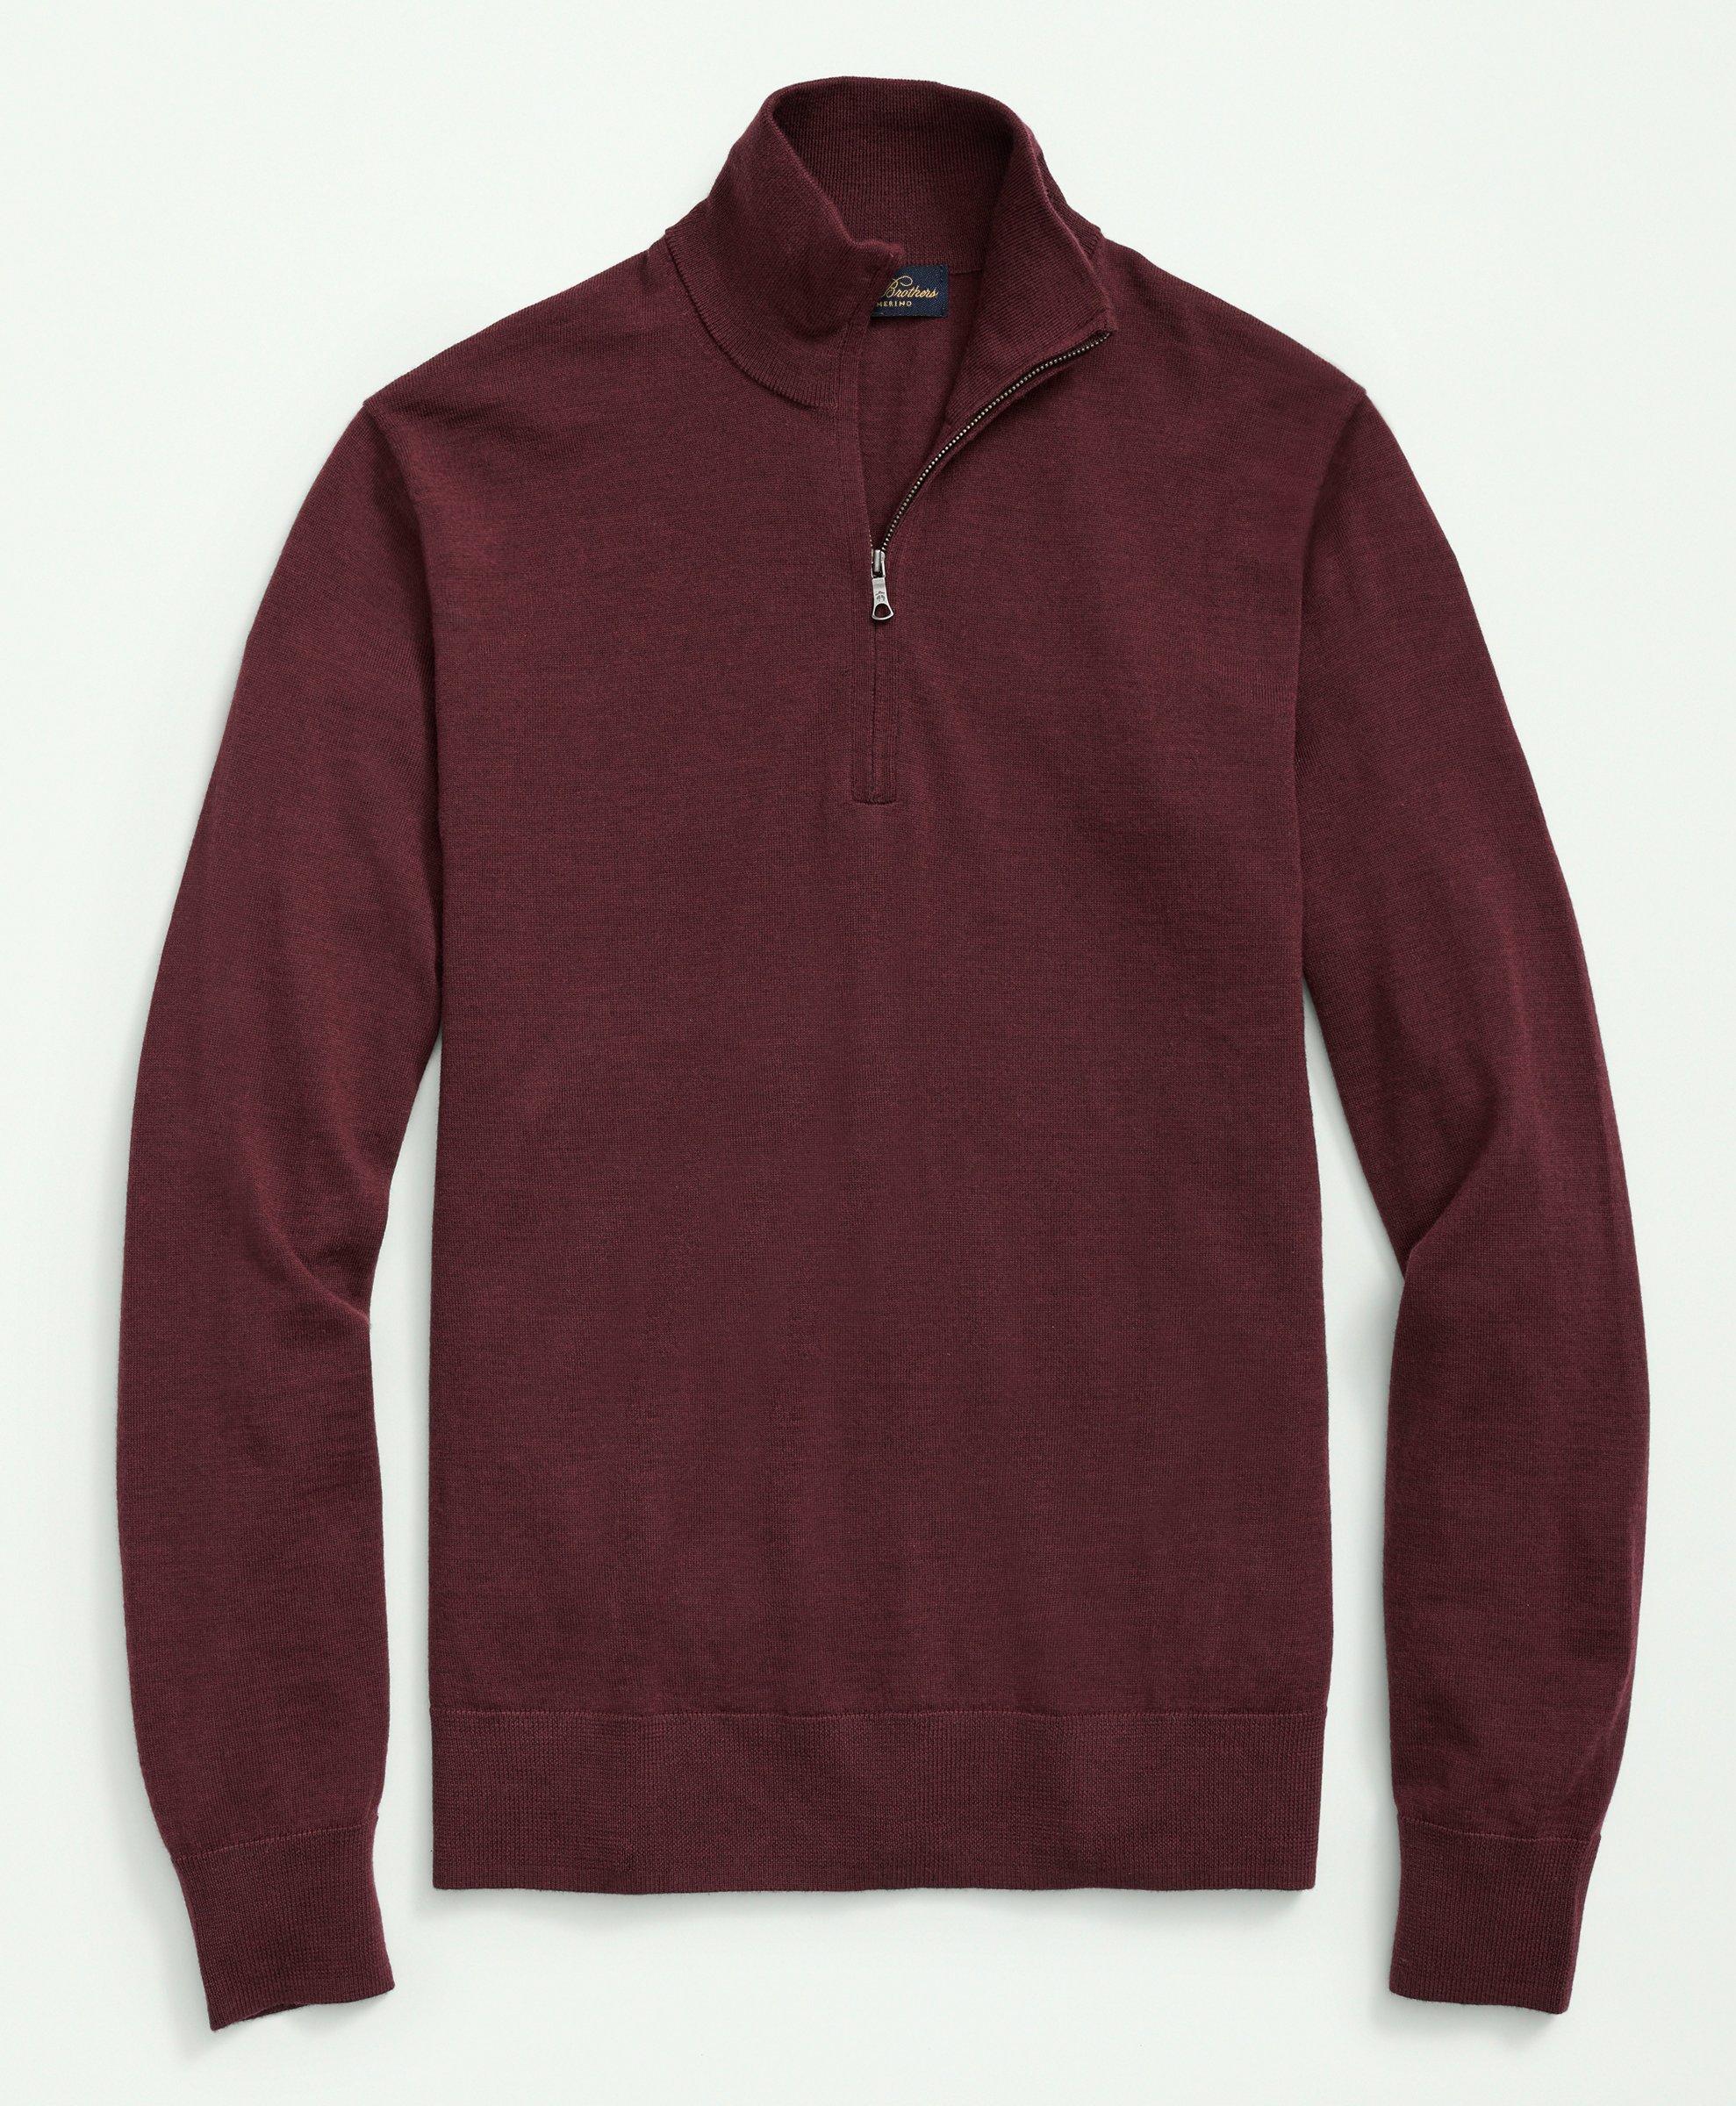 Brooks Brothers Big & Tall Fine Merino Wool Half-zip Sweater | Burgundy | Size 4x Tall